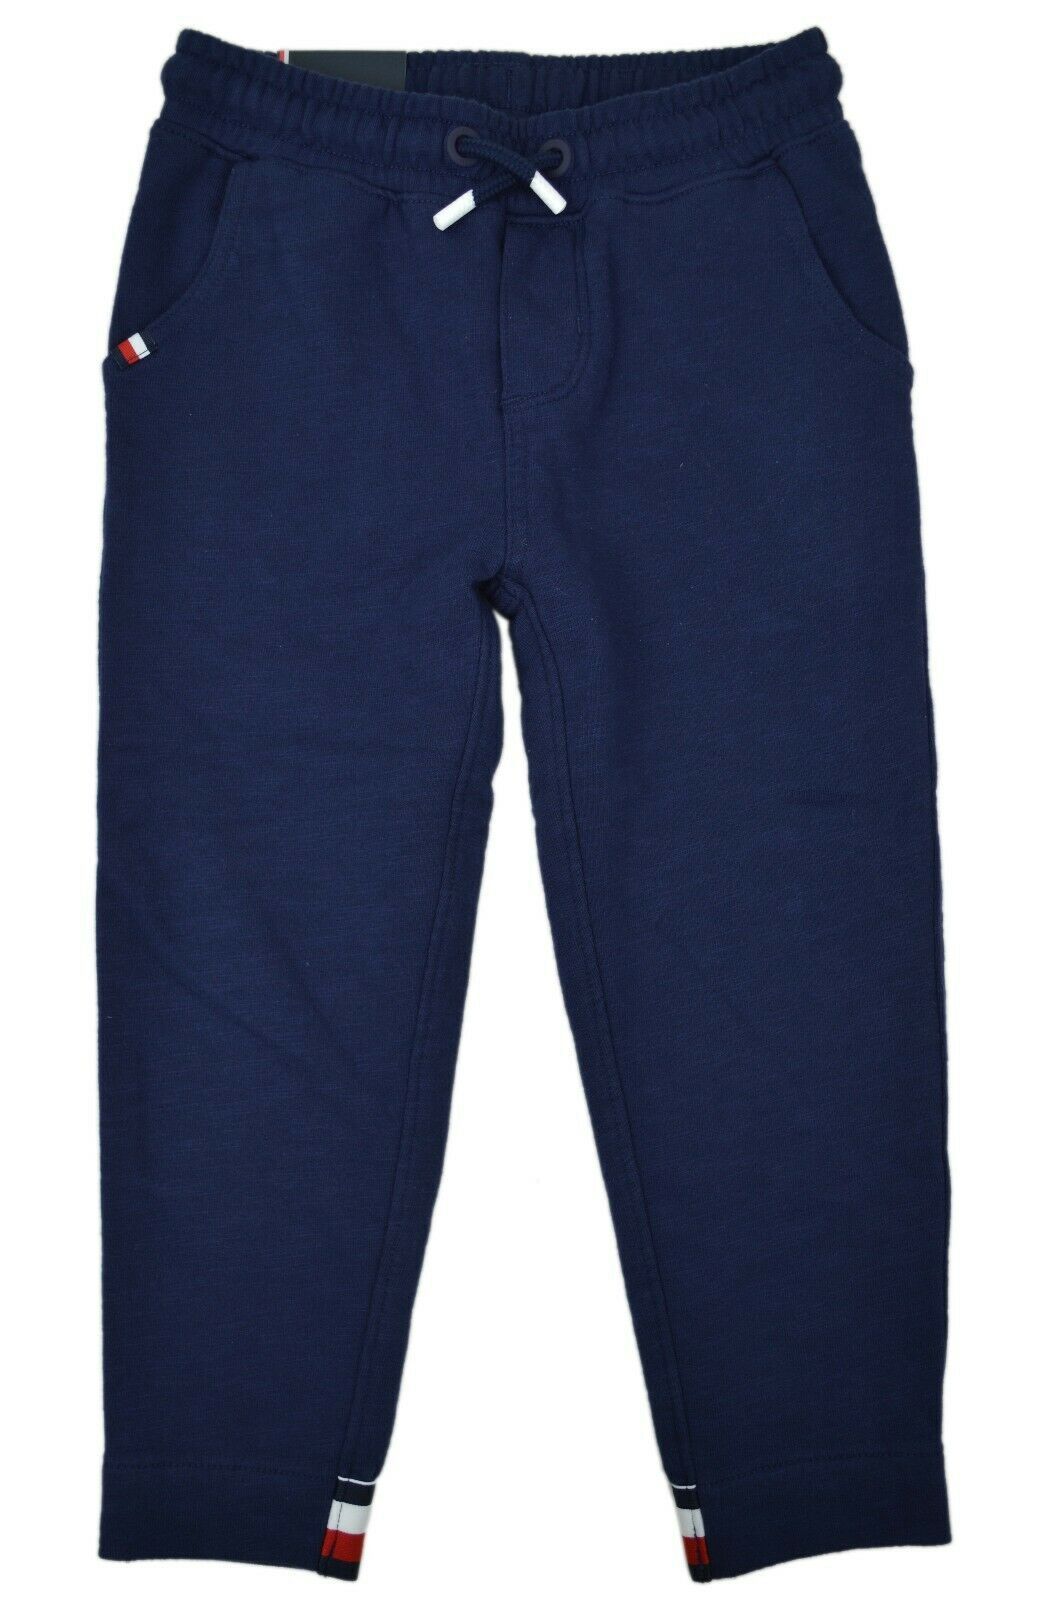 Tommy Hilfiger Boys' Jogger Pants with Elastic Waist, Navy, Sz L 9708-1 - $39.54